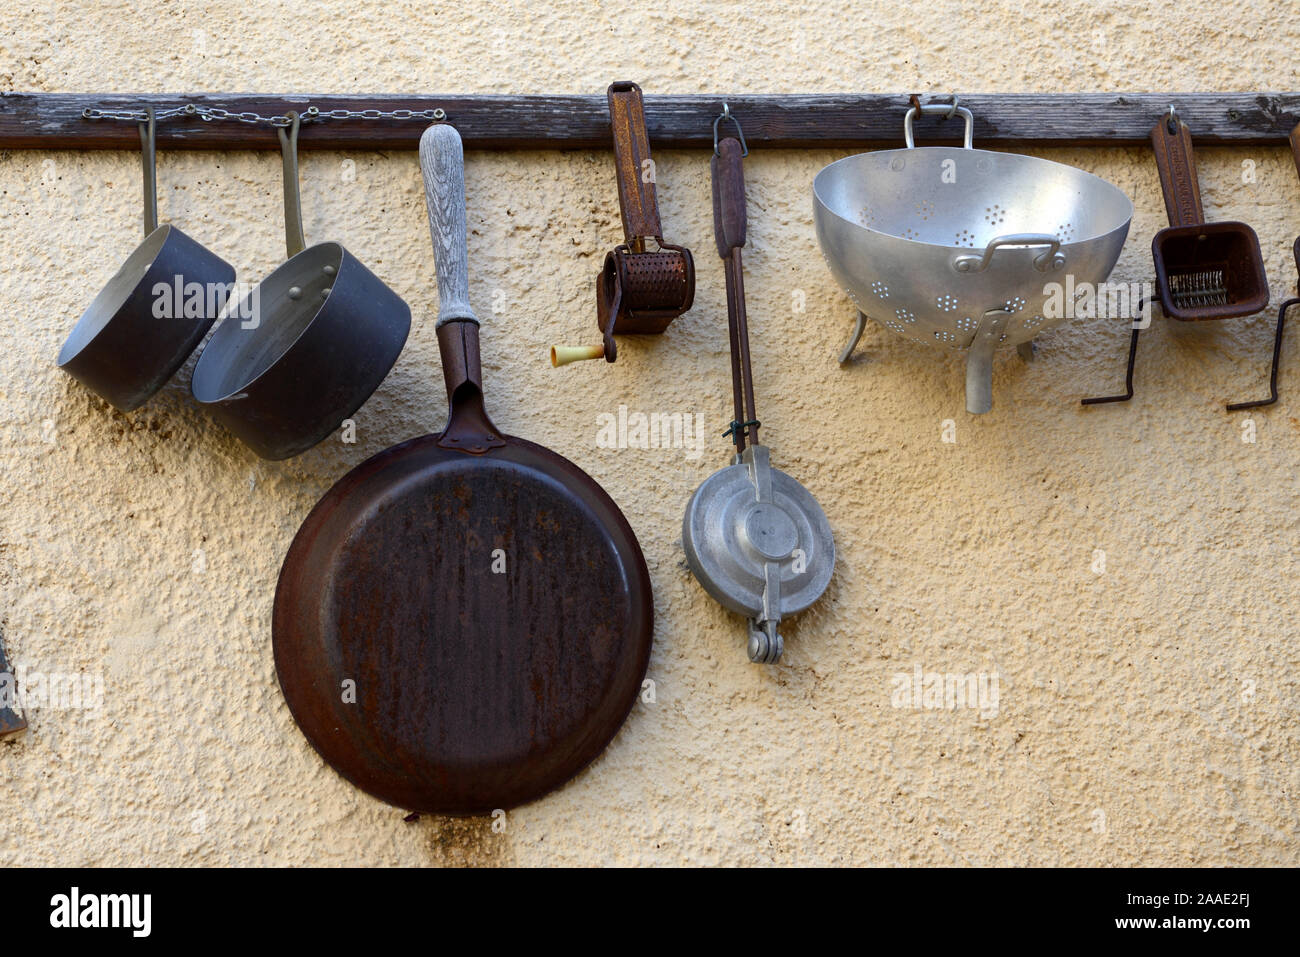 Vintage ou Antique Collection d'ustensiles de cuisine anciens pendaison de crémaillère sur le mur, y compris les casseroles, les spatules & Essoreuses Banque D'Images